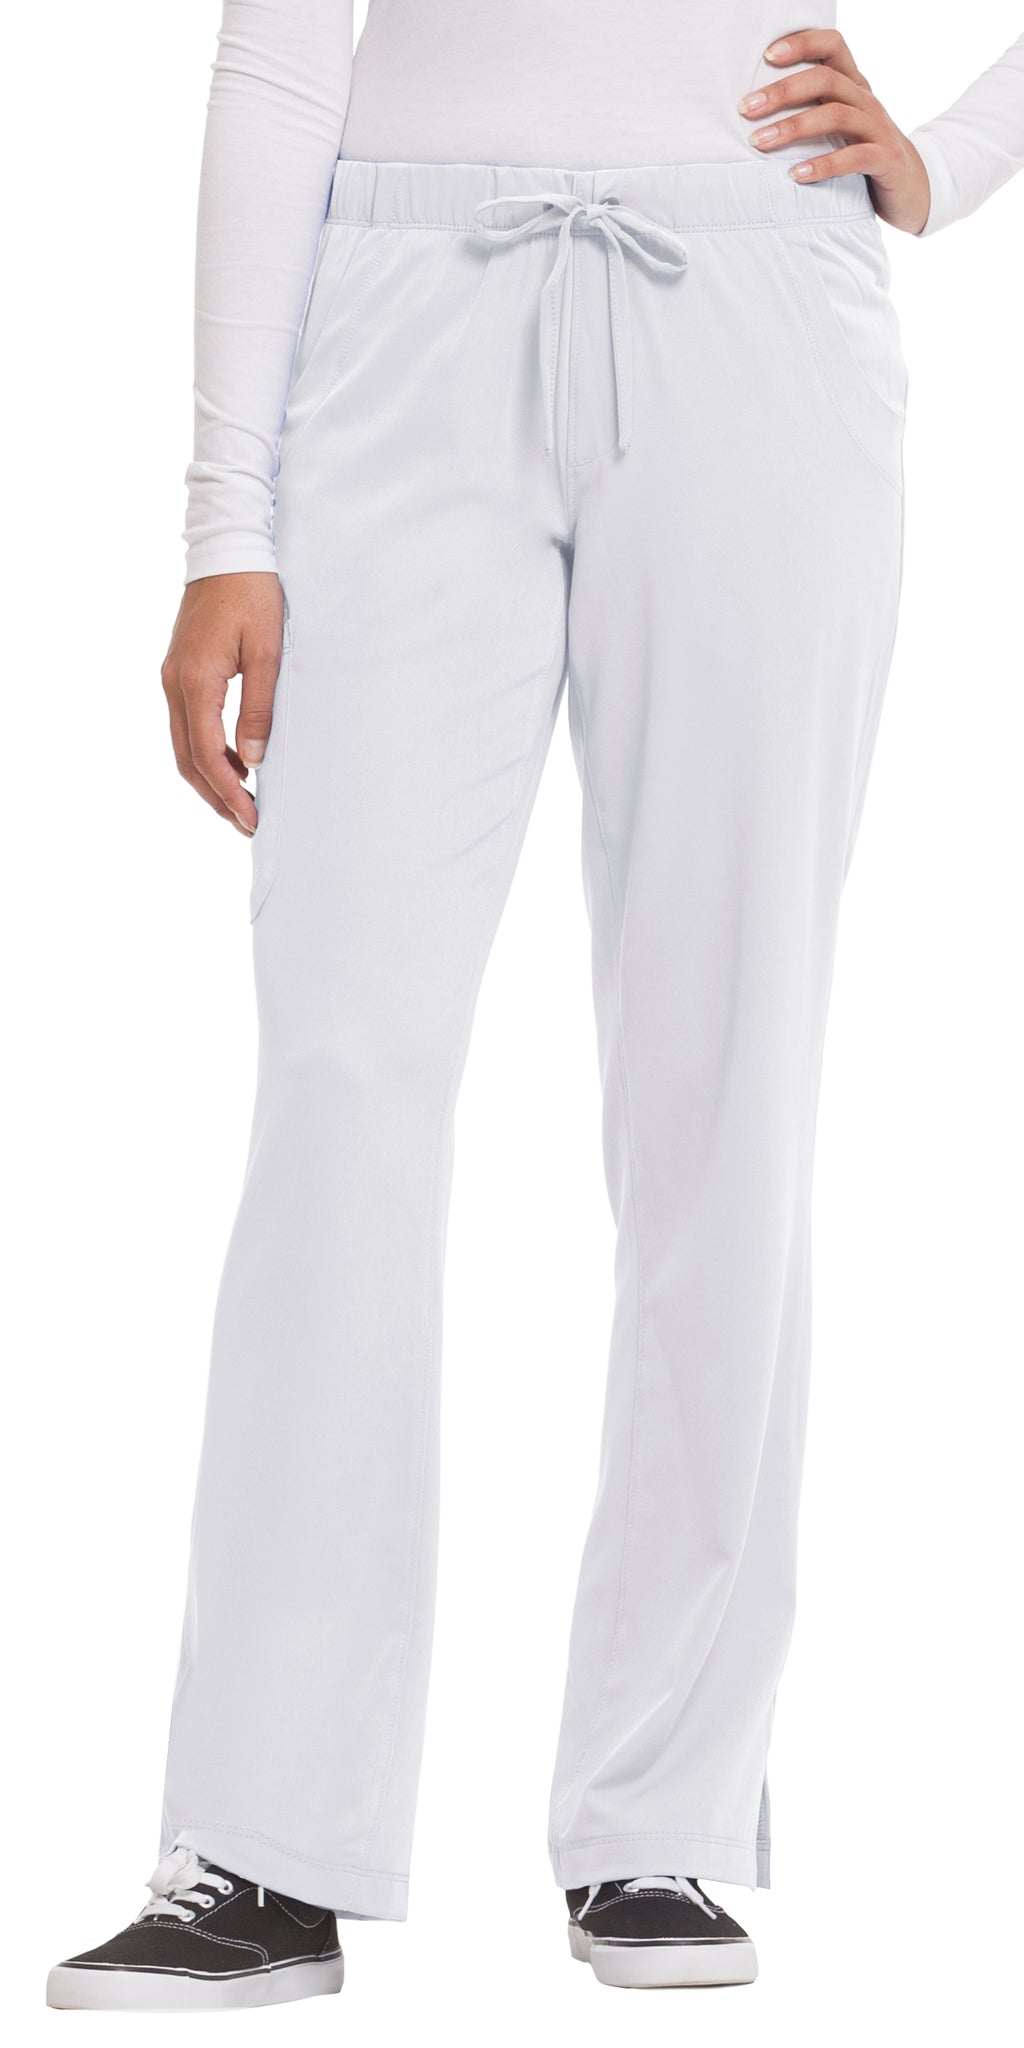 Argon Scrub Pants | White scrubs, Nurse outfit scrubs, Stretch scrubs